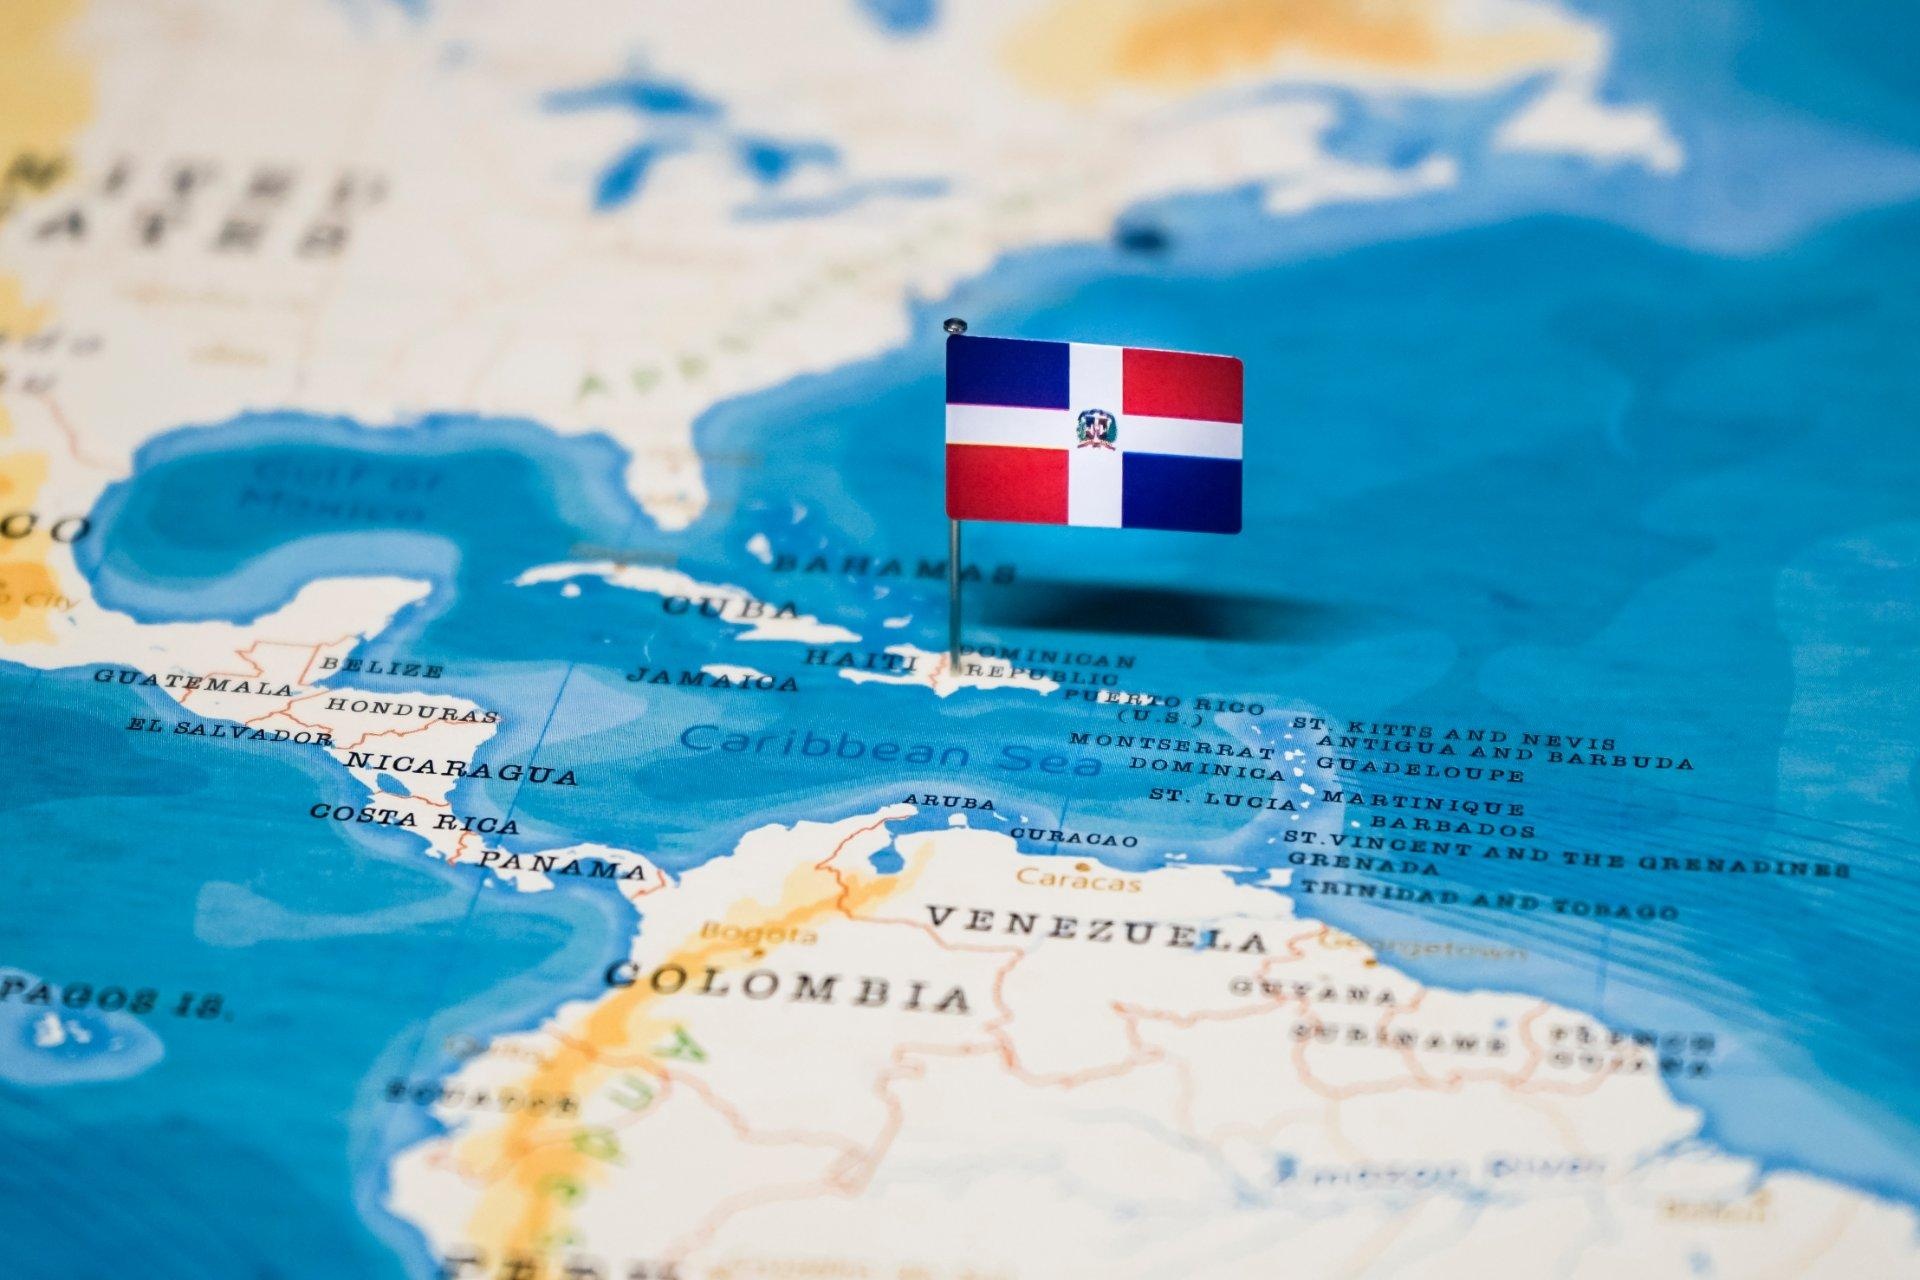 bandera de república dominicana clavada sobre el país en mapa del caribe